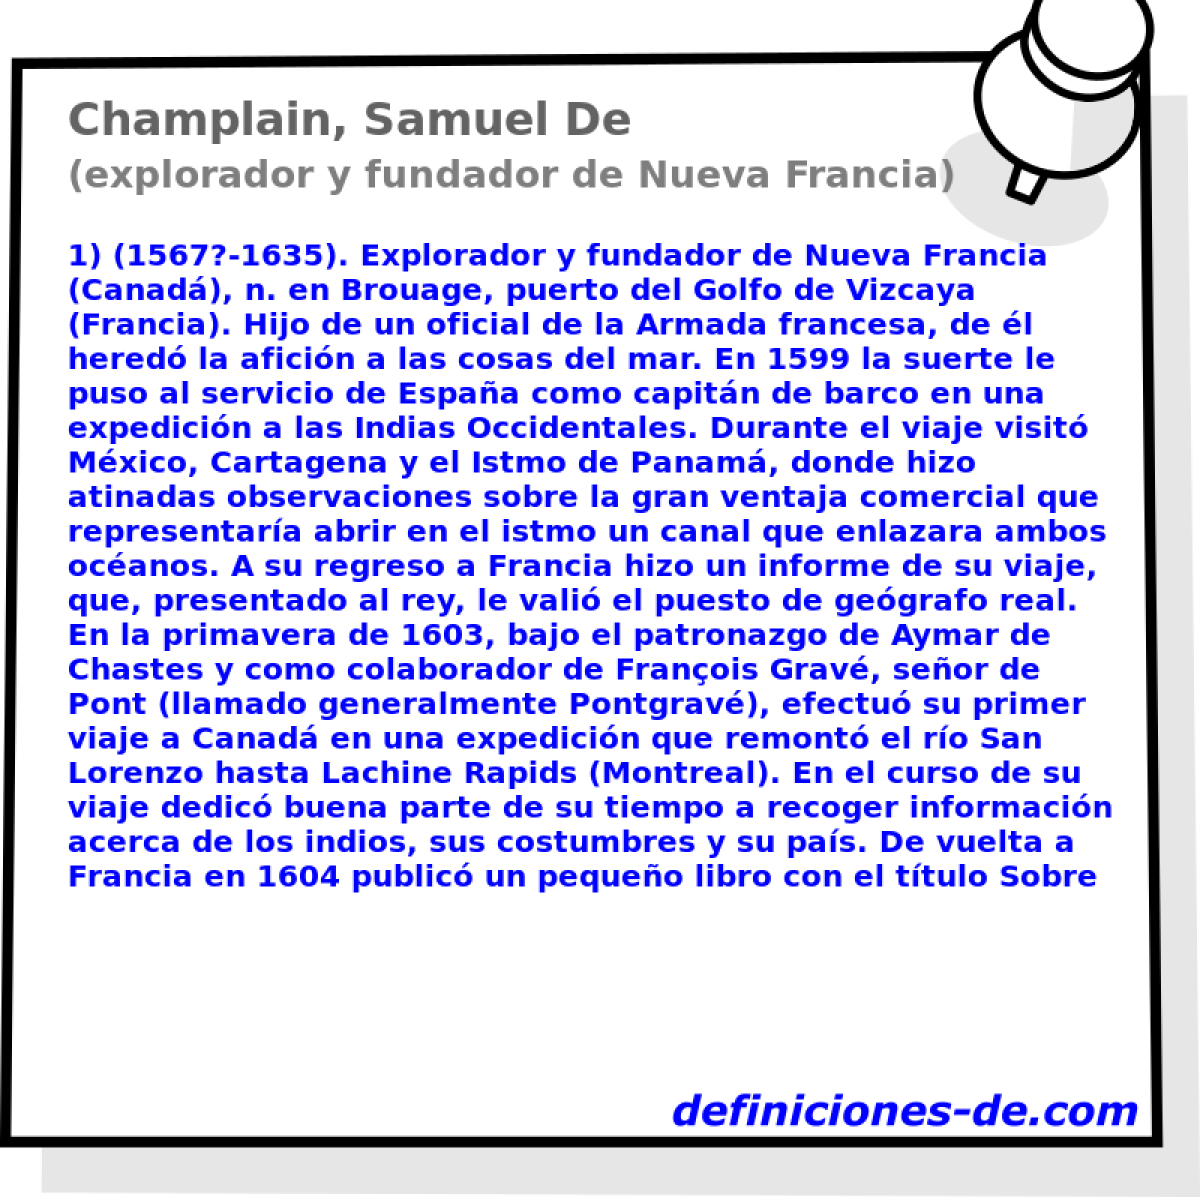 Champlain, Samuel De (explorador y fundador de Nueva Francia)